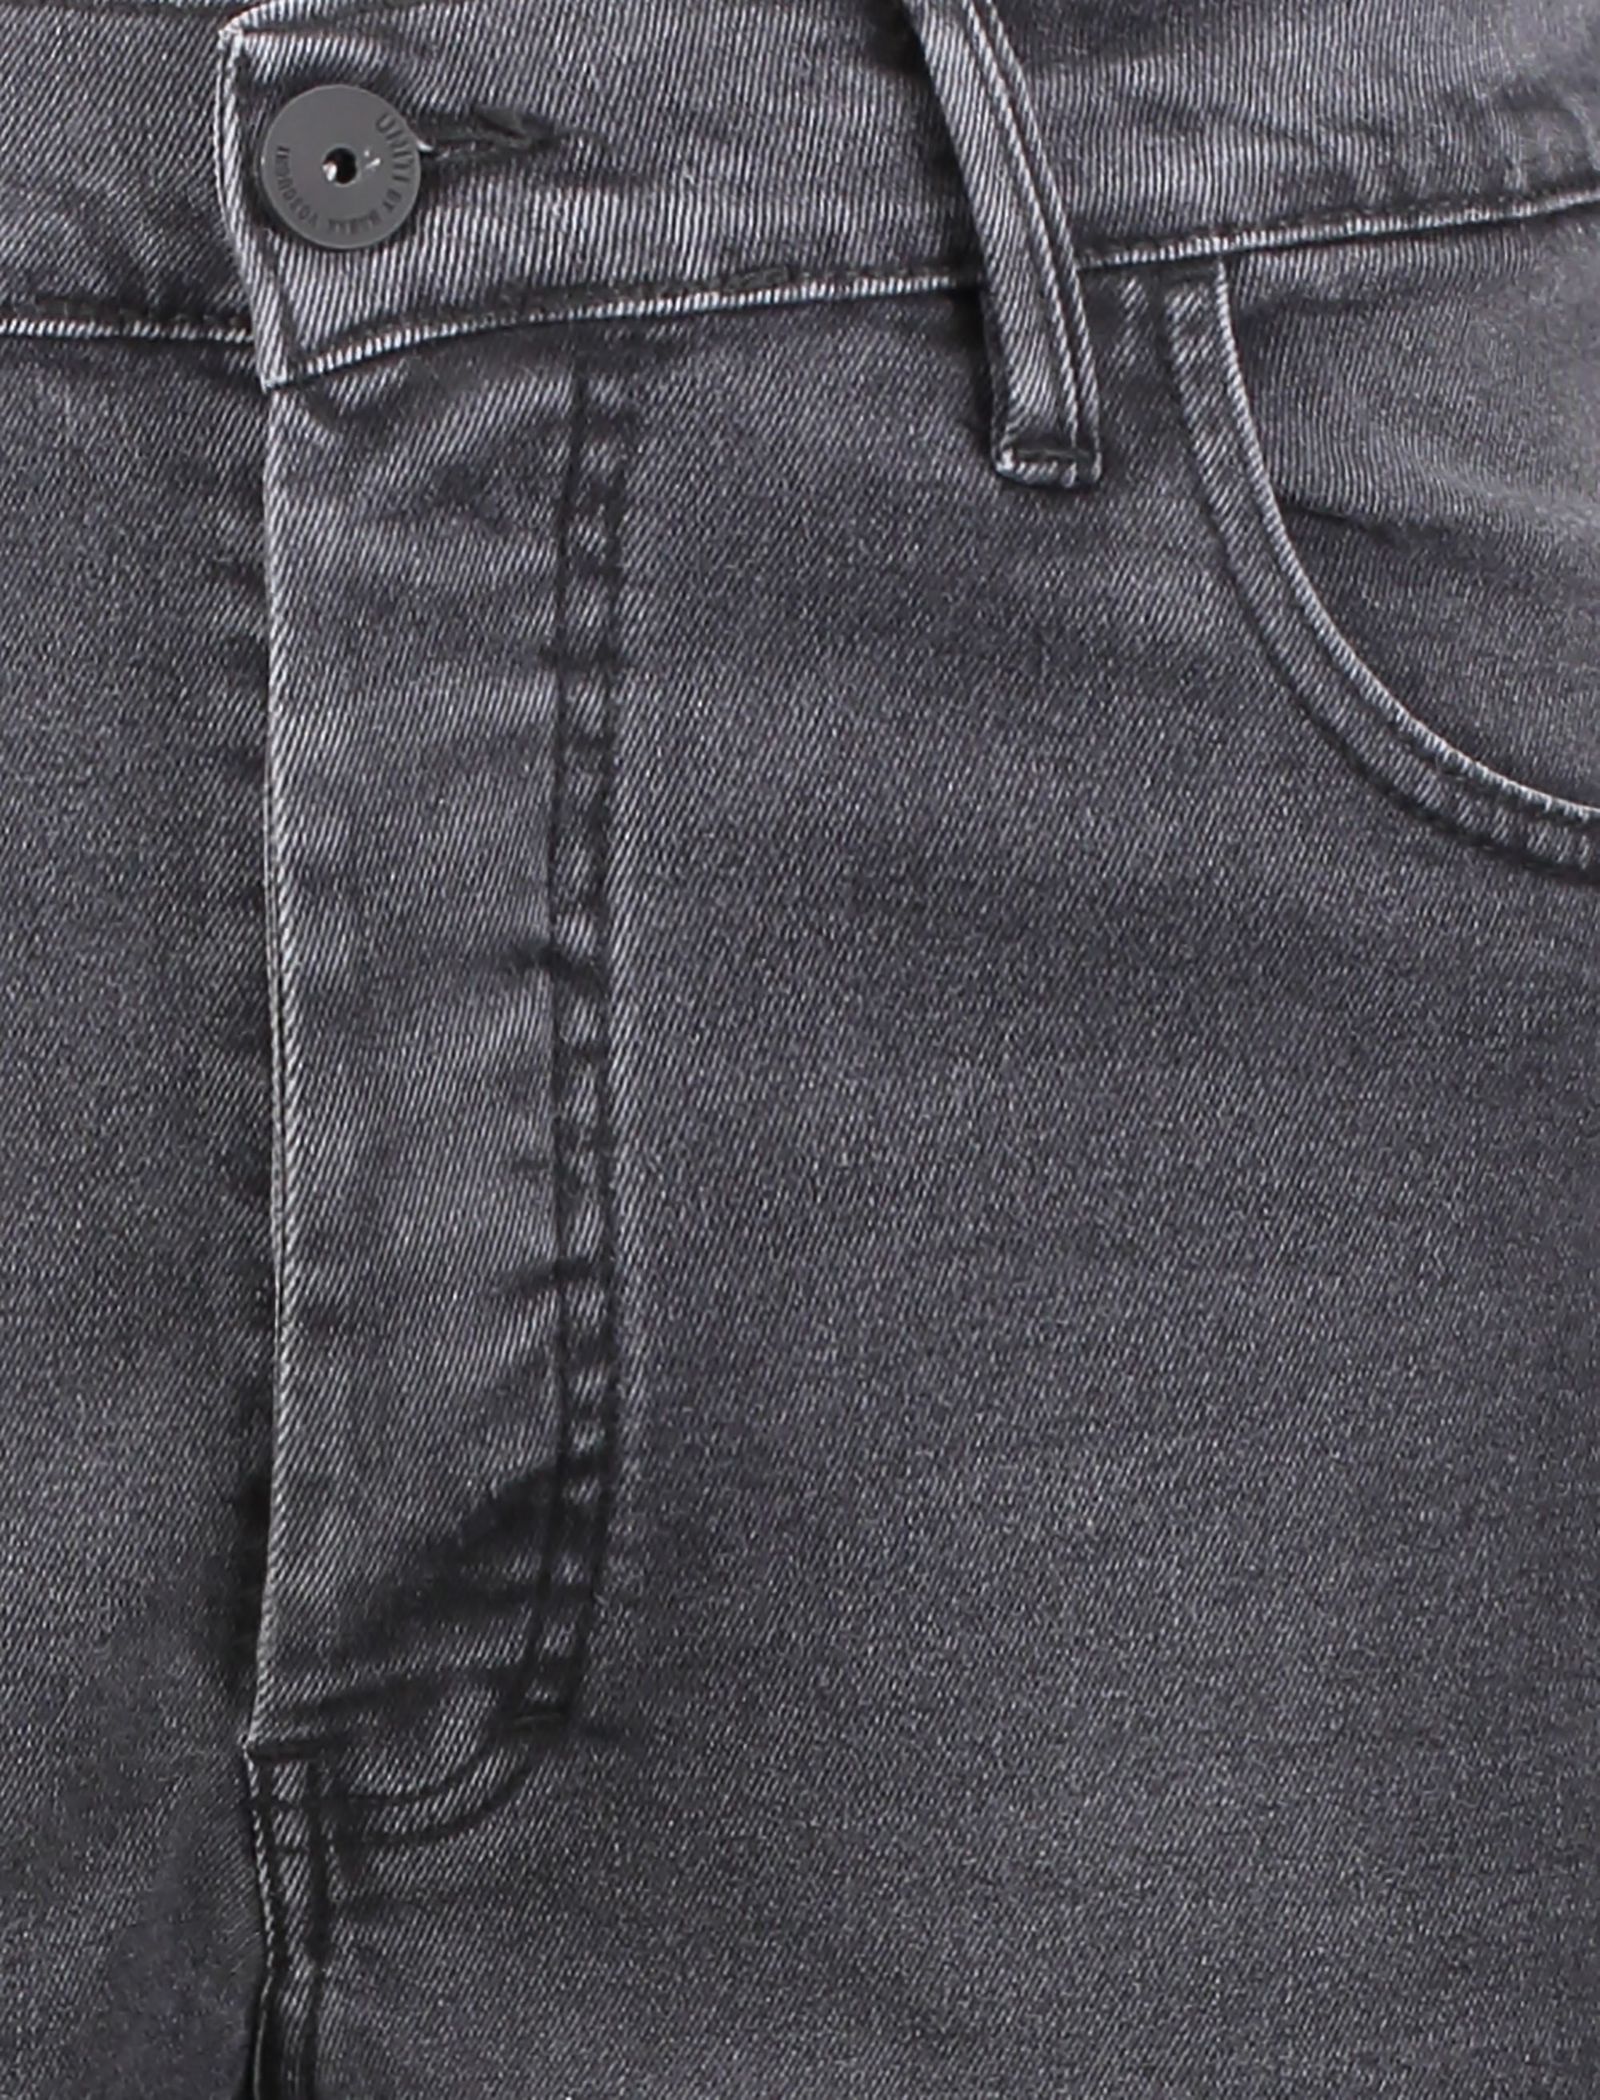 شلوار جین مردانه - یونیتی - زغالي - 5